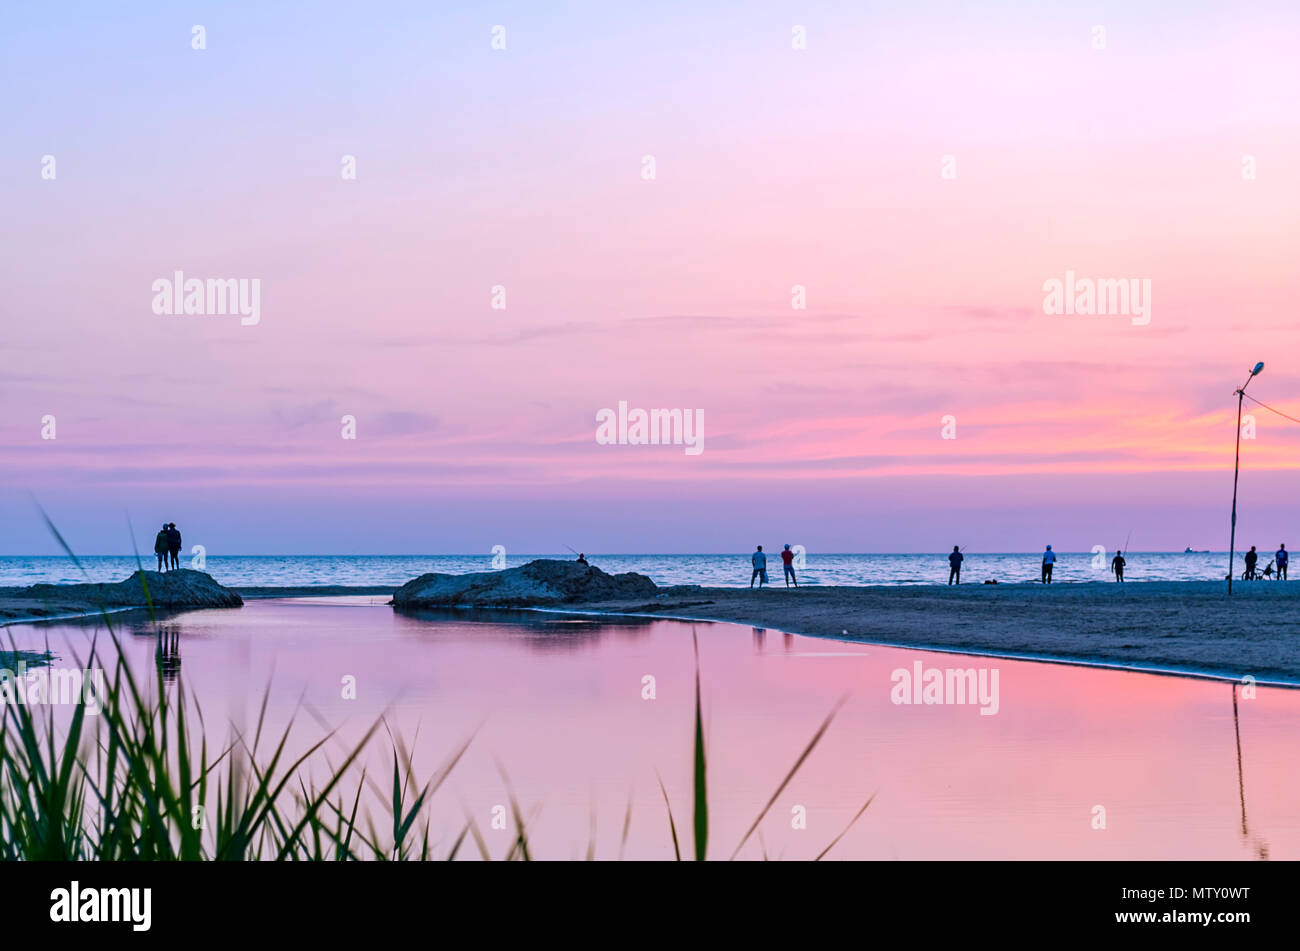 Touristen und Fischer sind am Schwarzen Meer und genießen Sie den schönen Sonnenuntergang. Ein Paar in Liebe nimmt eine selfie gegen den Sonnenuntergang. Stockfoto